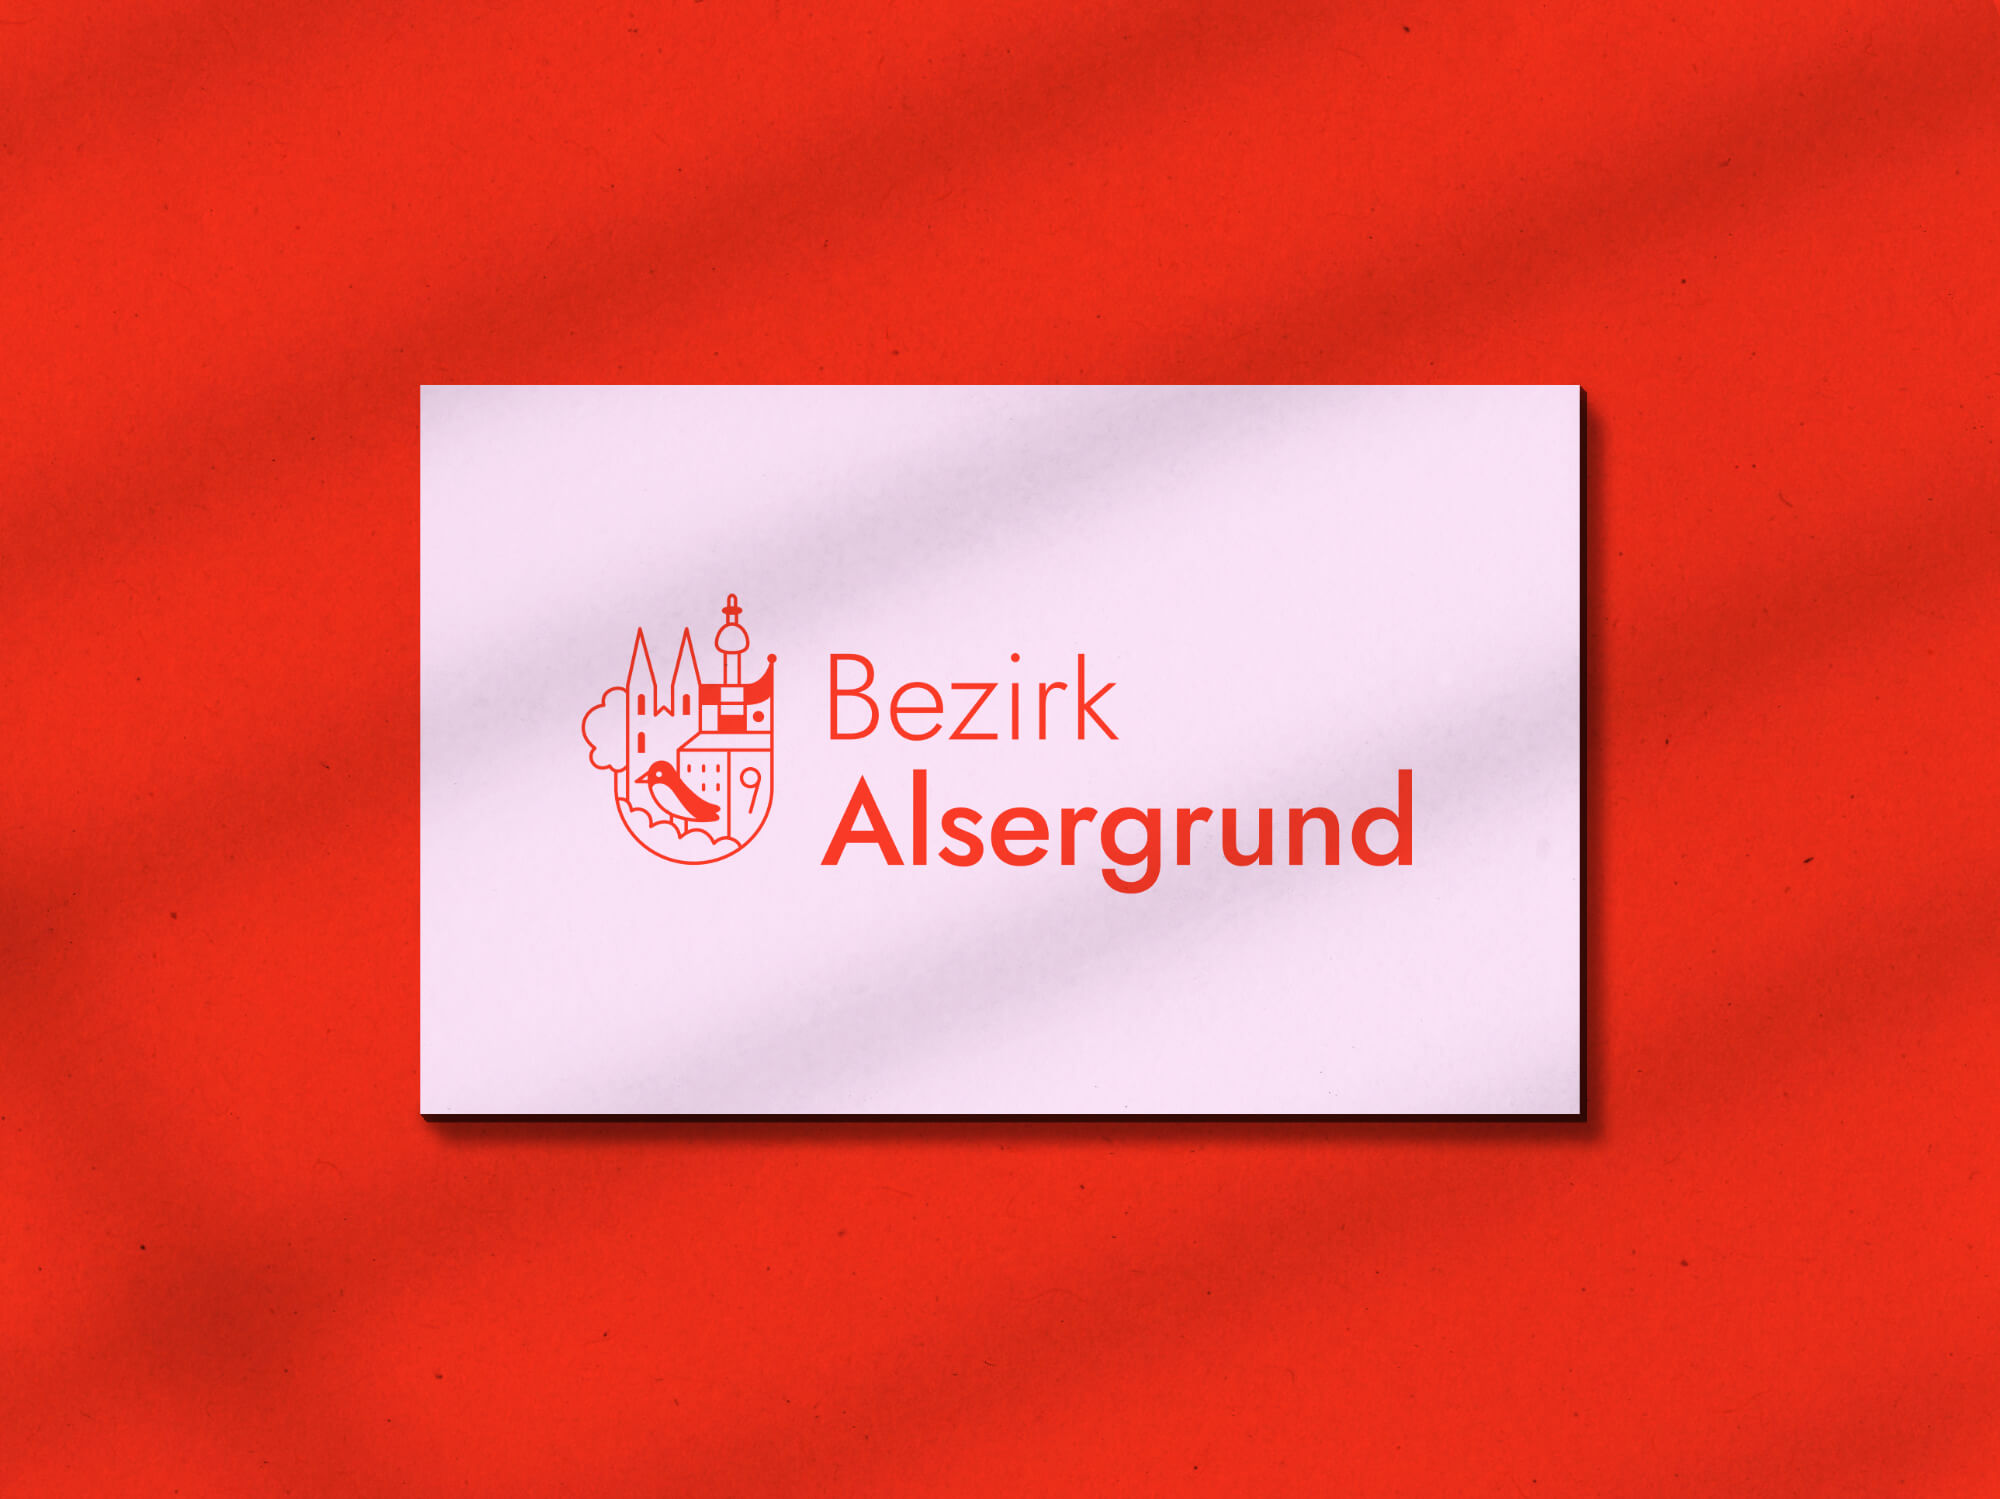 Petra-Hollaender-Branding-Bezirkvorstehung-Alsergrund-Wien-Corporate-Design-Illustration-02